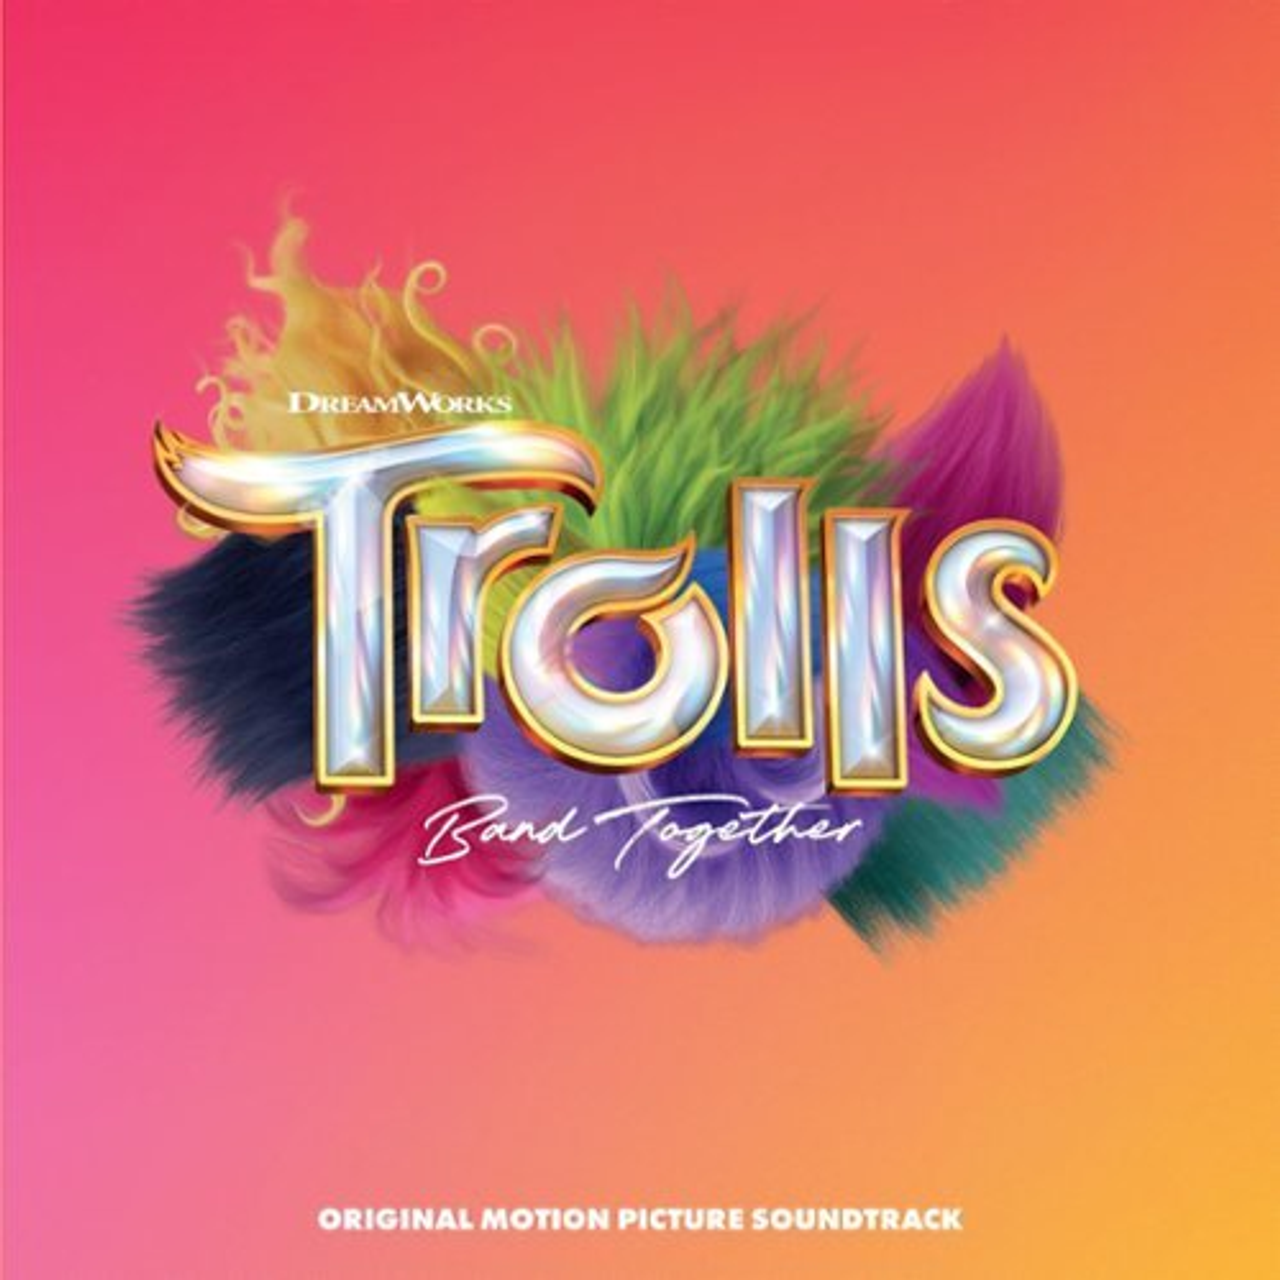 Trolls Band Together [Original Motion Picture Soundtrack] [LP] - VINYL